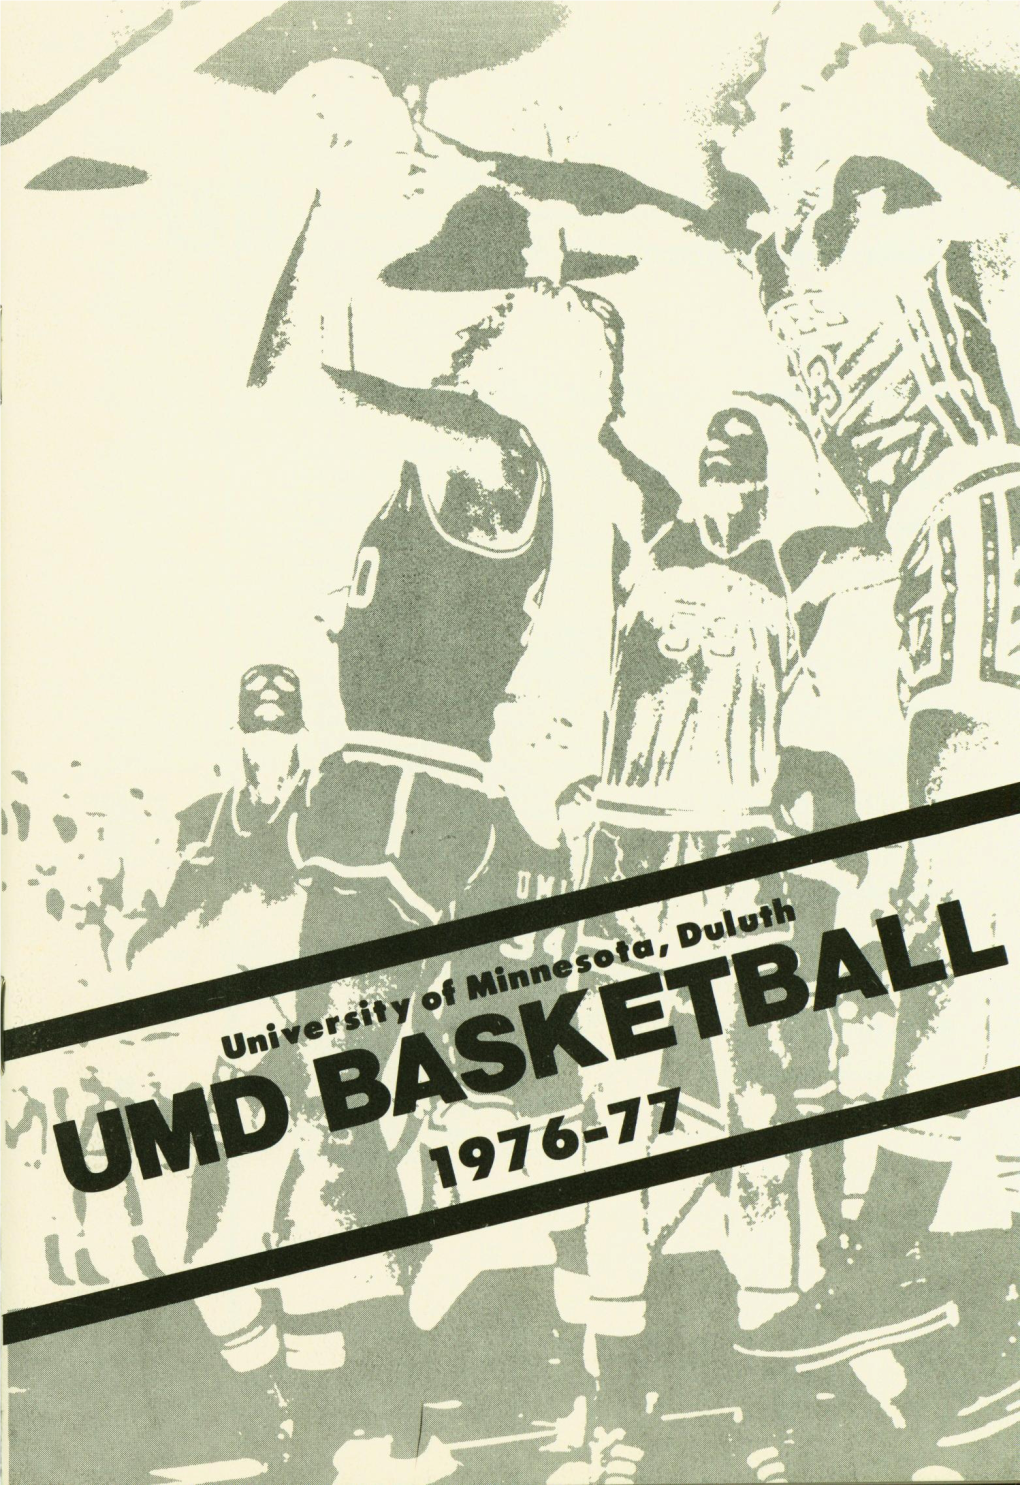 University of Minnesota, Duluth Basketball (1976-1977)